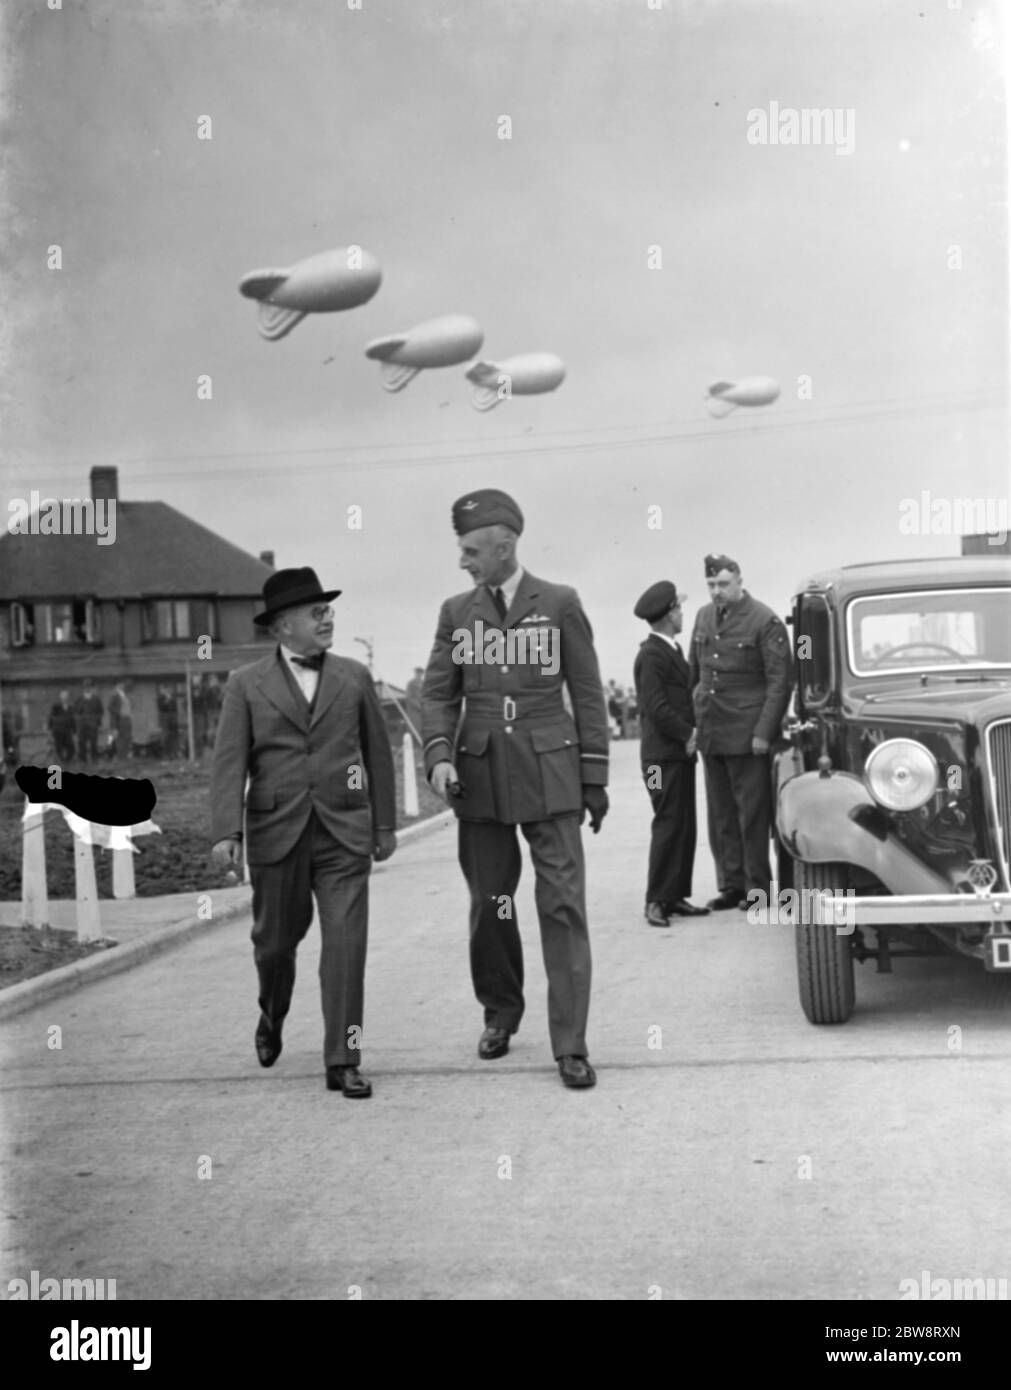 Le ministre de l'Air Sir Kingsley Wood (à gauche) ouvre le premier site de l'escadron de ballons de barrage à Kidbrooke où des ballons d'entraînement ont été sortis des hangars . 6 septembre 1938 Banque D'Images